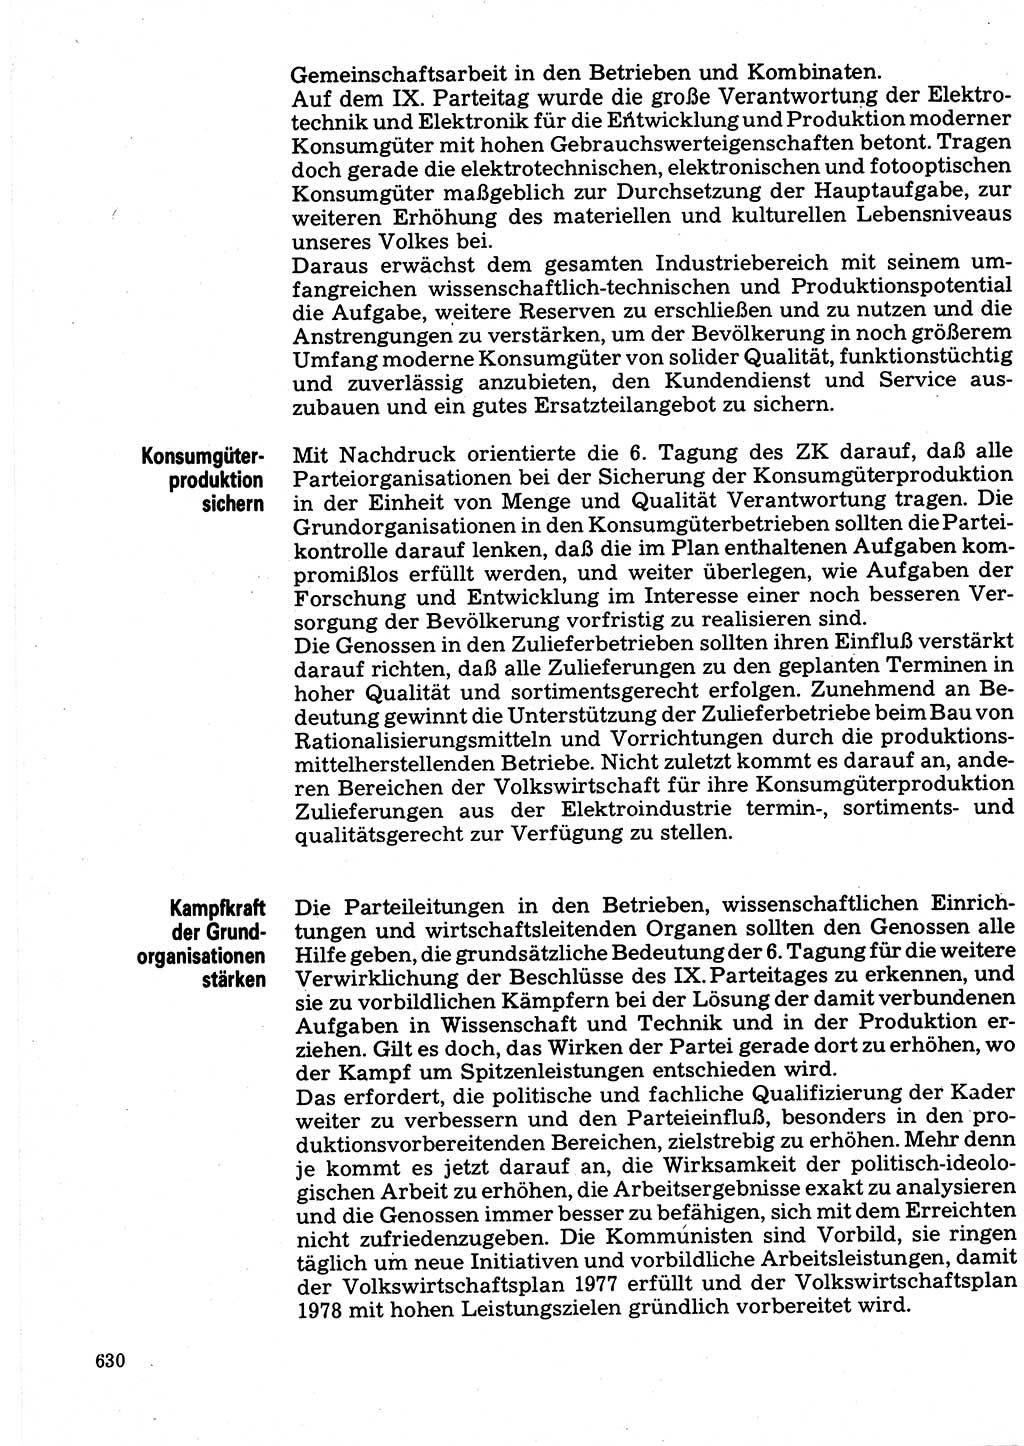 Neuer Weg (NW), Organ des Zentralkomitees (ZK) der SED (Sozialistische Einheitspartei Deutschlands) für Fragen des Parteilebens, 32. Jahrgang [Deutsche Demokratische Republik (DDR)] 1977, Seite 630 (NW ZK SED DDR 1977, S. 630)